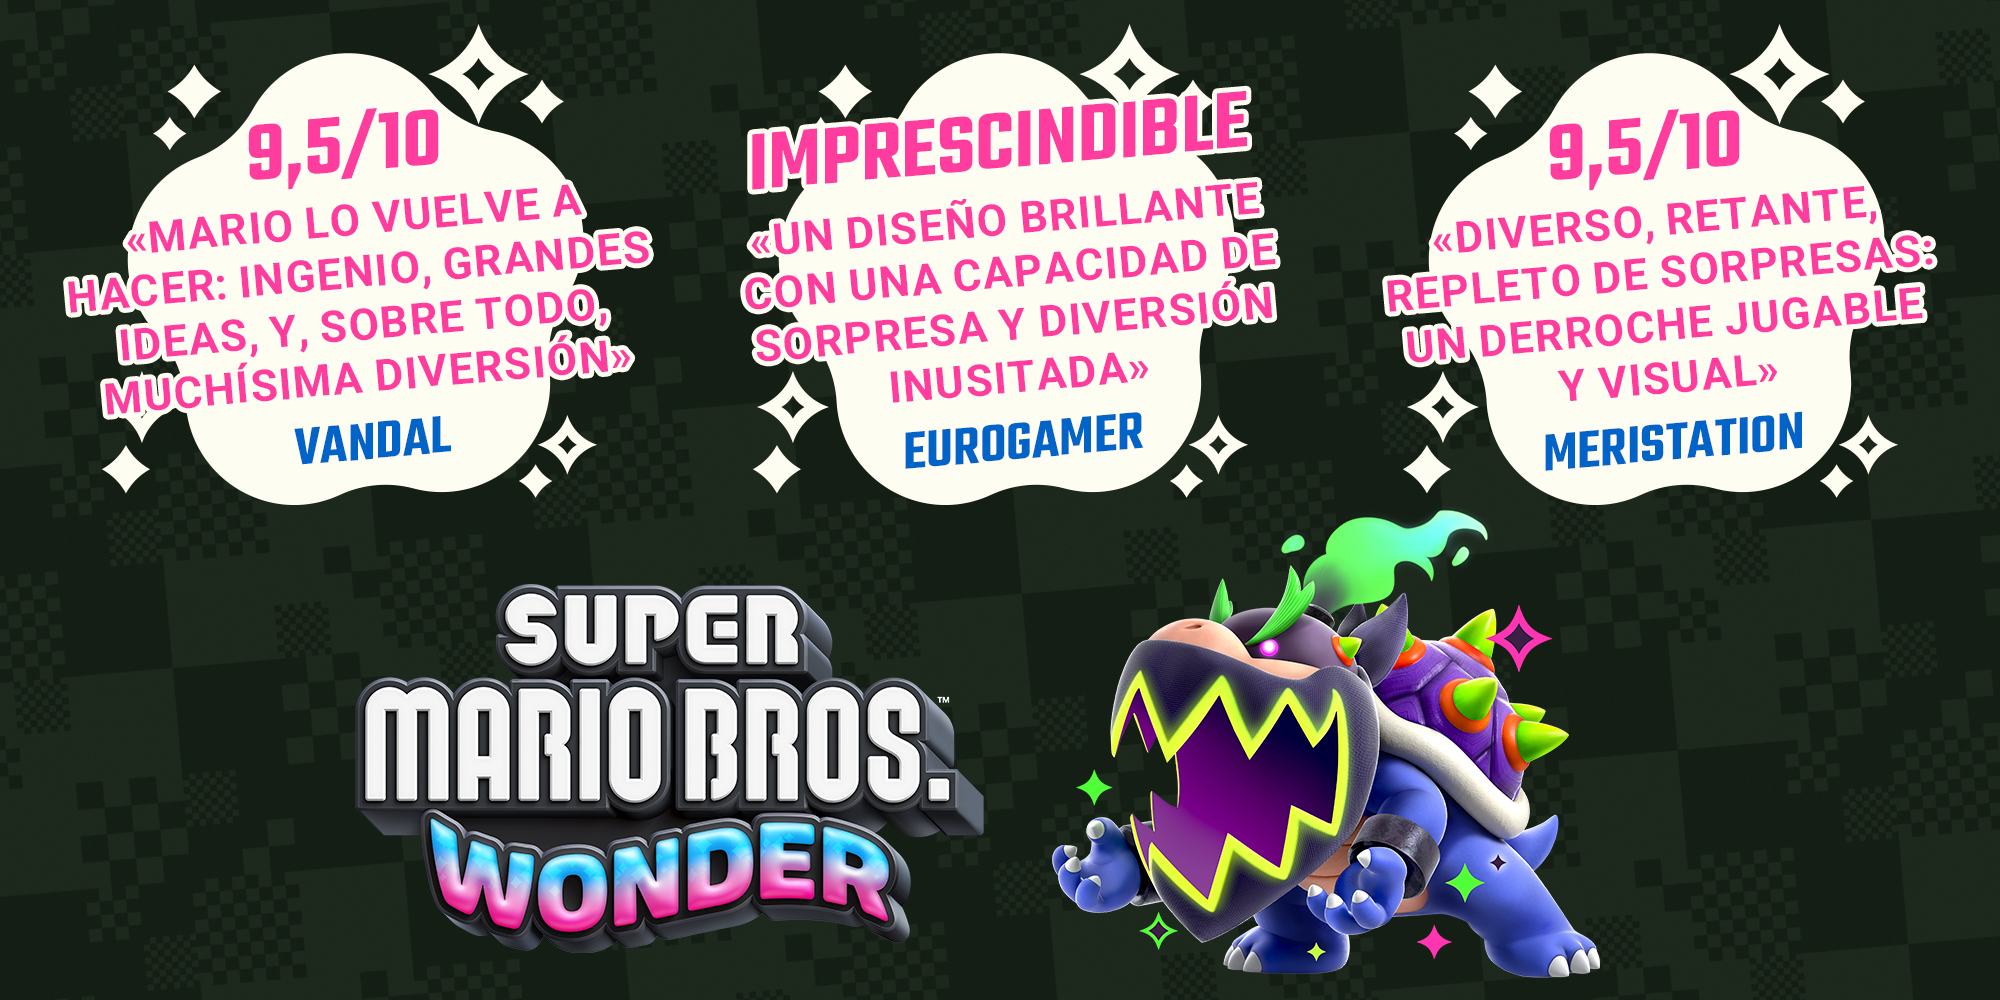 ¡Aquí están las reseñas de Super Mario Bros. Wonder!